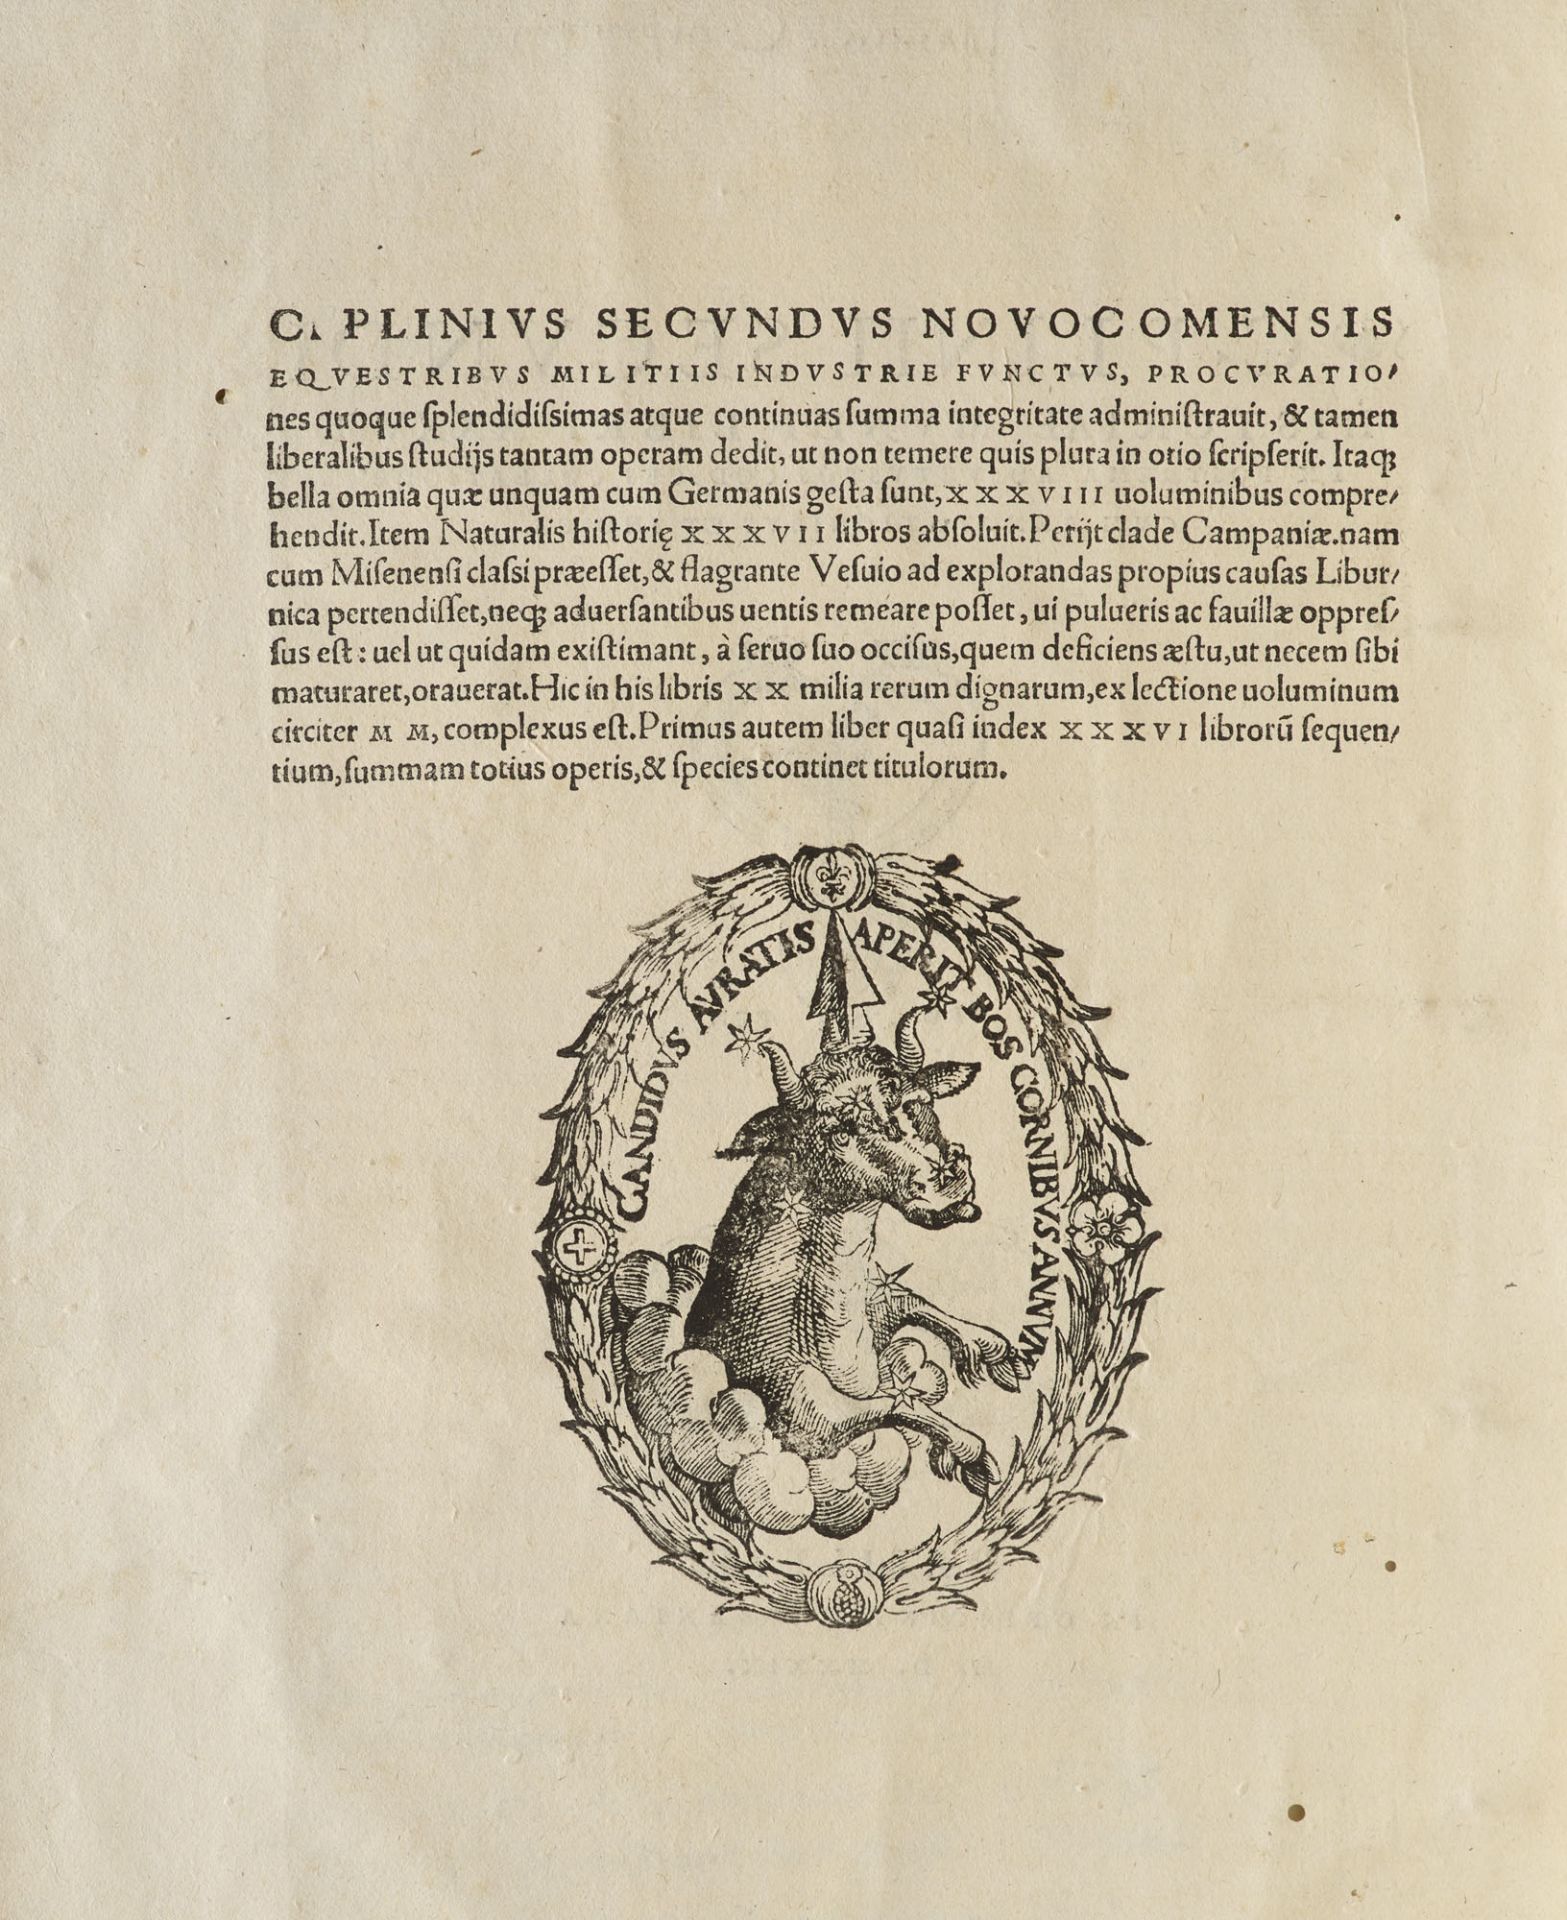 Plinius Secundus. C. Plinii Secundi - Image 3 of 3